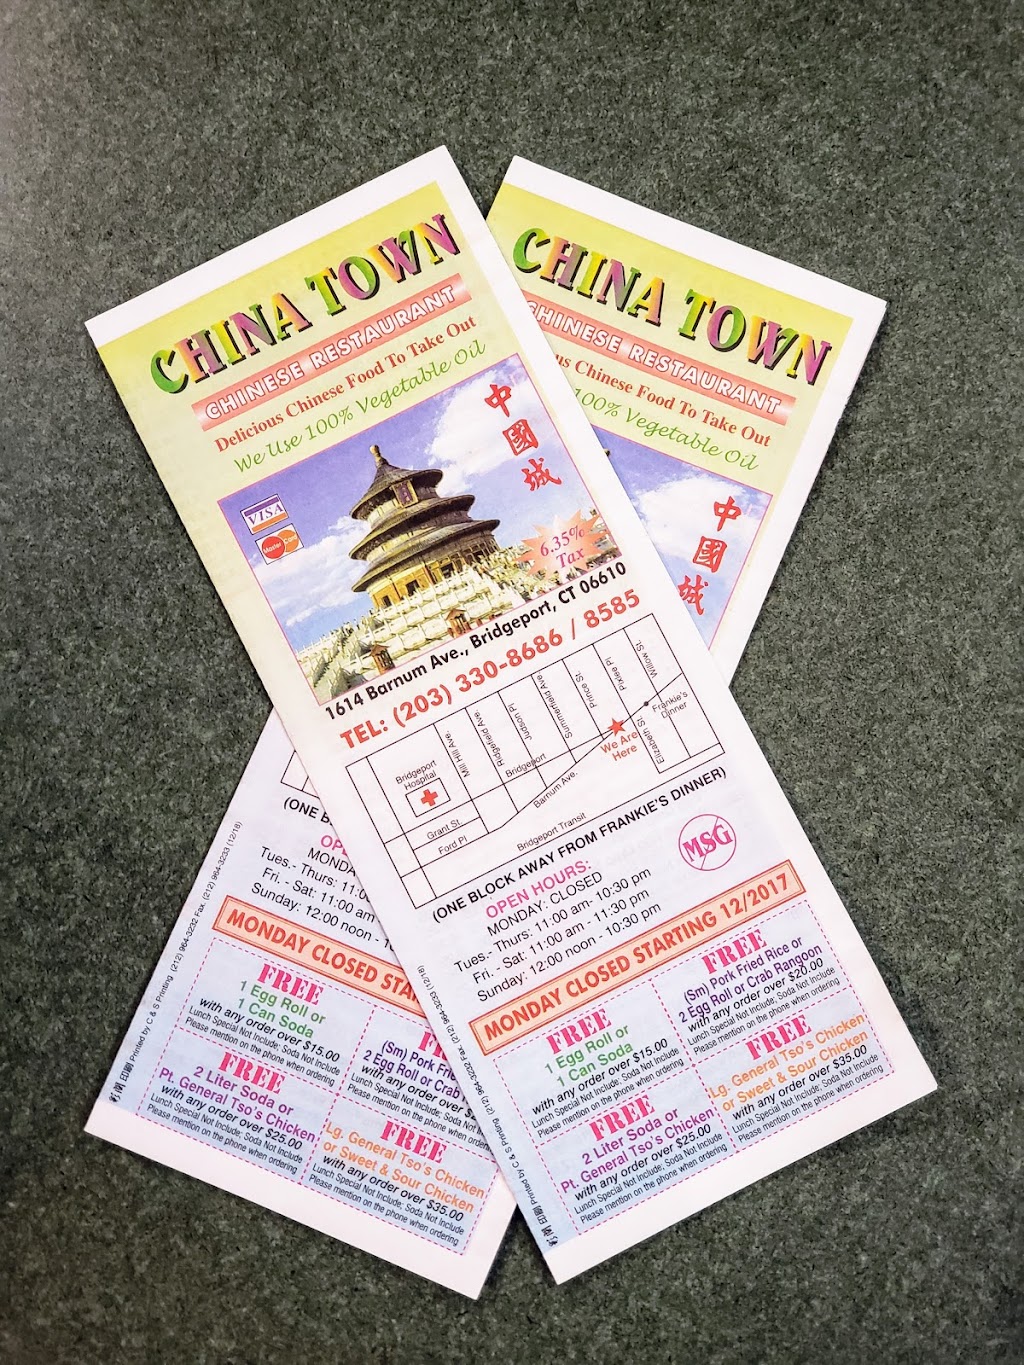 China Town Chinese Restaurant | 1614 Barnum Ave, Bridgeport, CT 06610 | Phone: (203) 330-8686